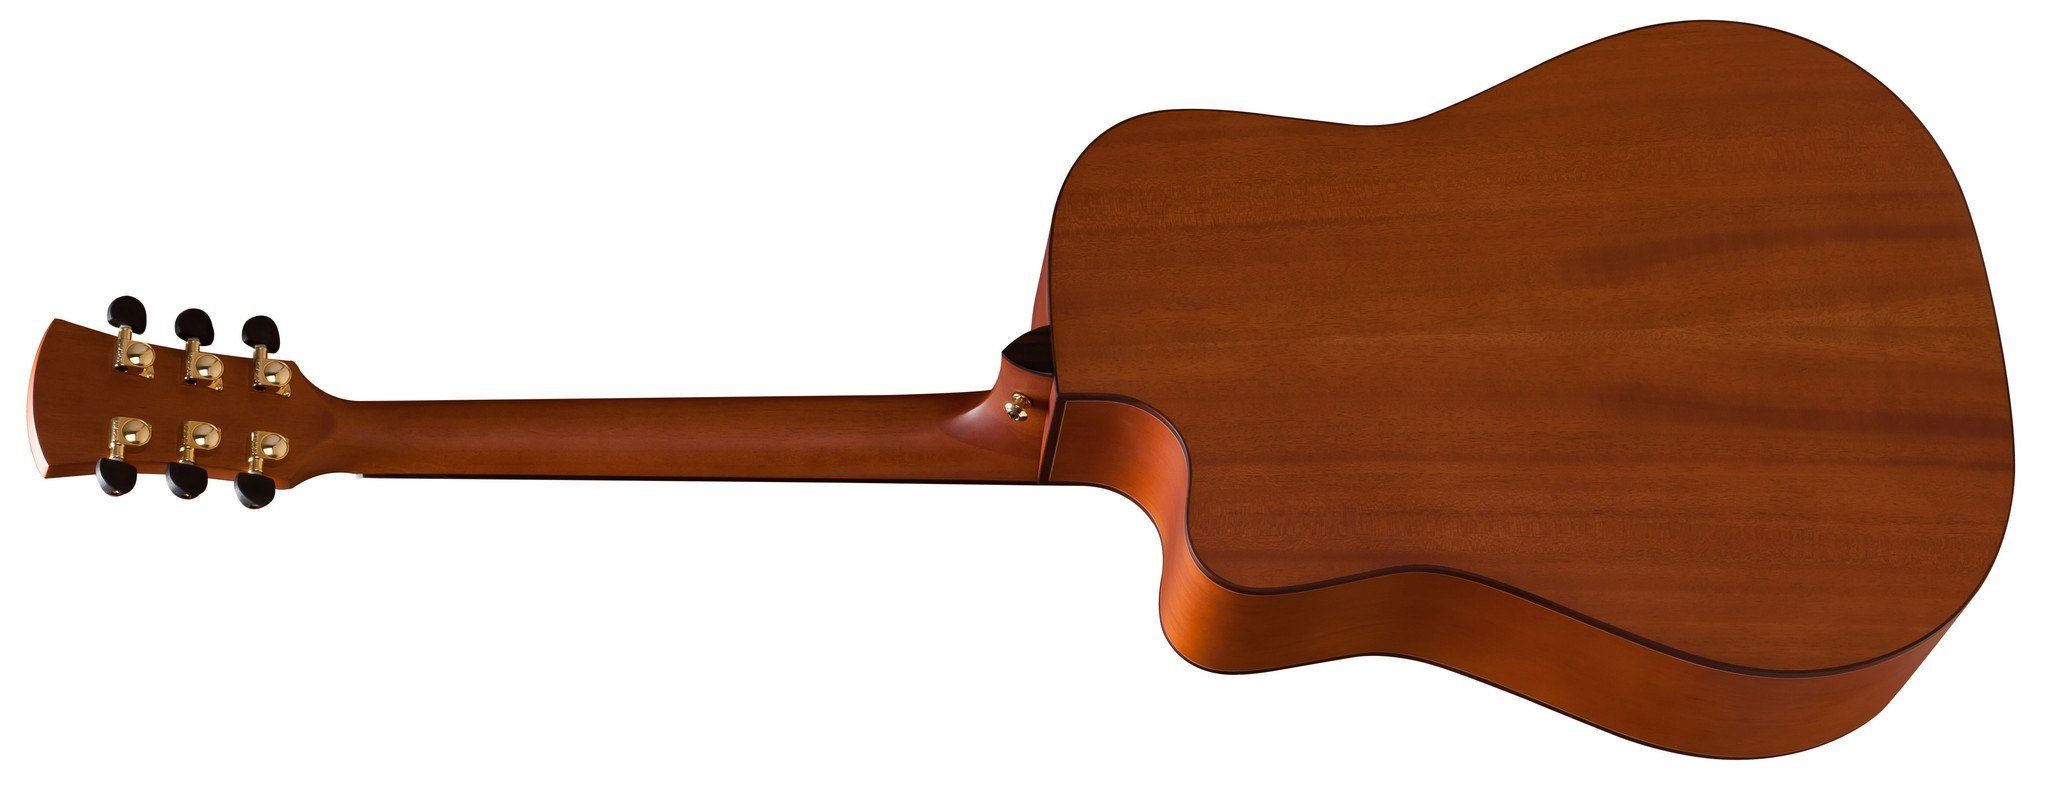 Faith Saturn E/Cut Natural (FSCE) Electro Acoustic Guitar, Electro Acoustic Guitar for sale at Richards Guitars.